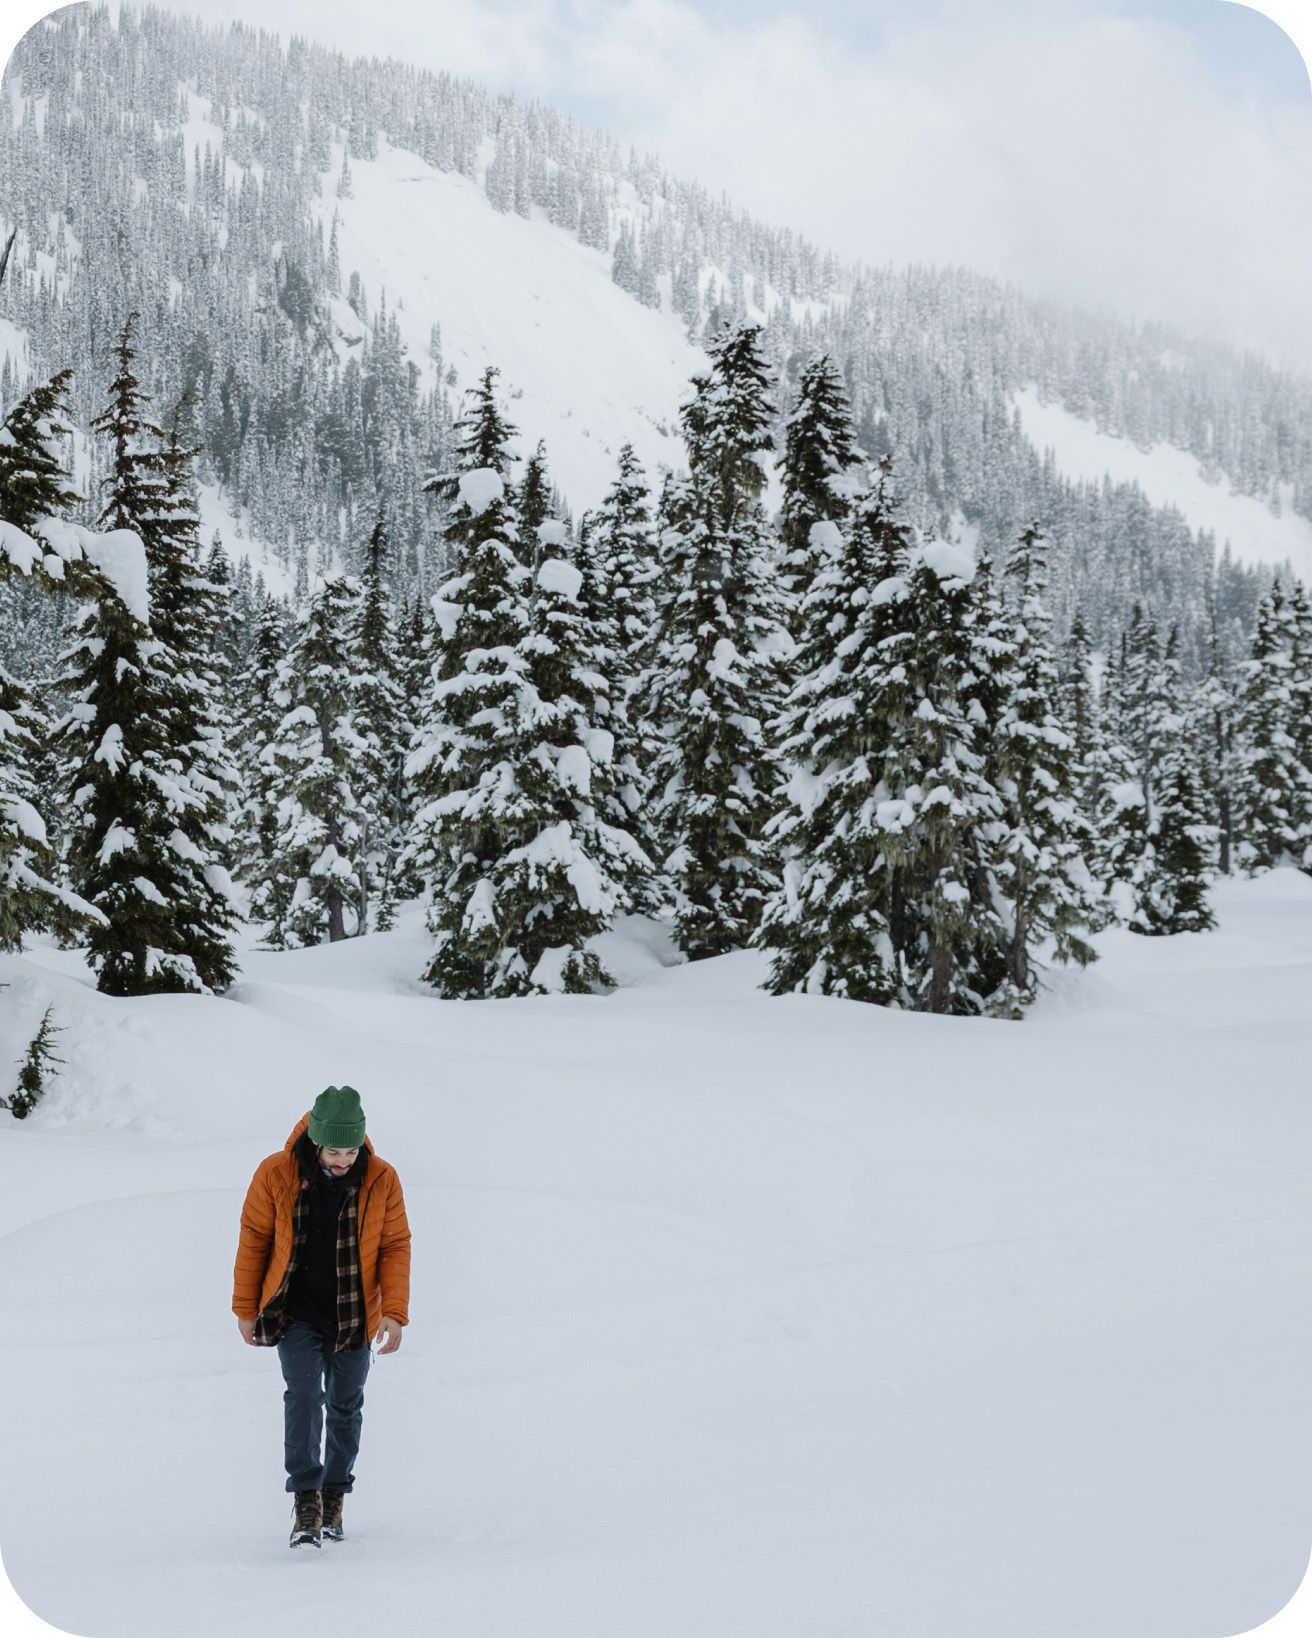 Person wearing boots walking in snowy landscape